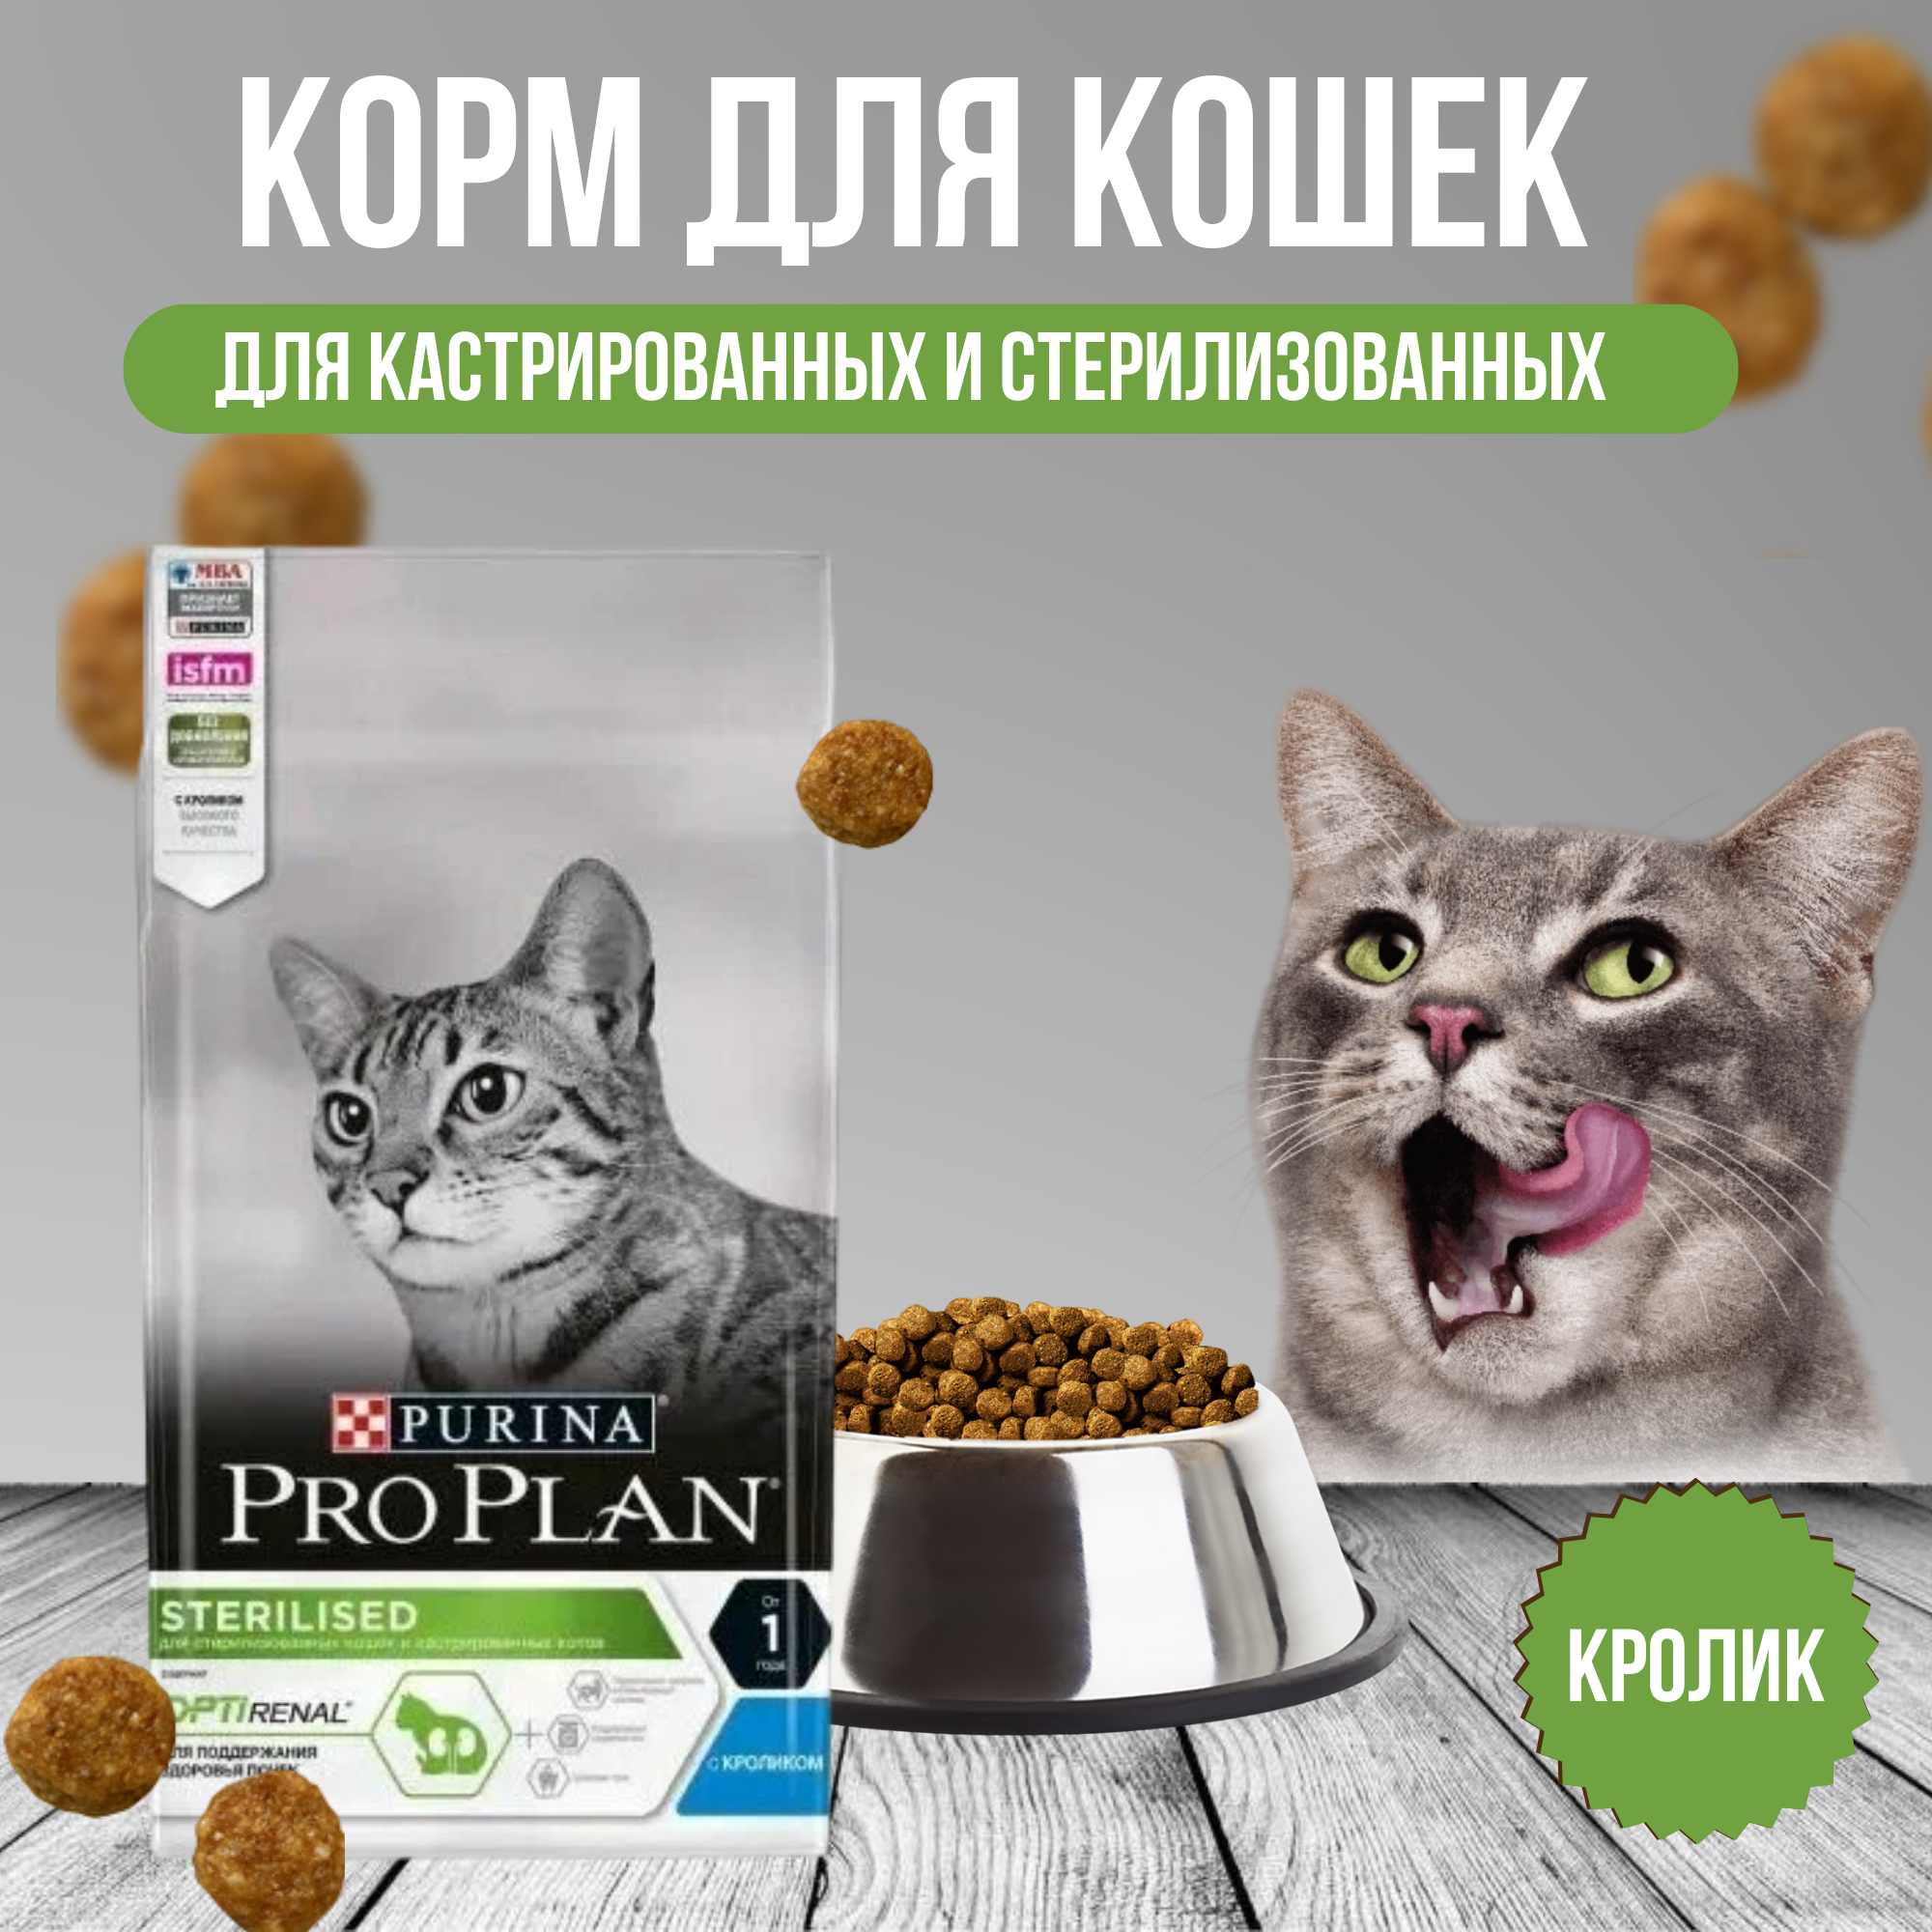 Корм для кошек Pro Plan - фото №1